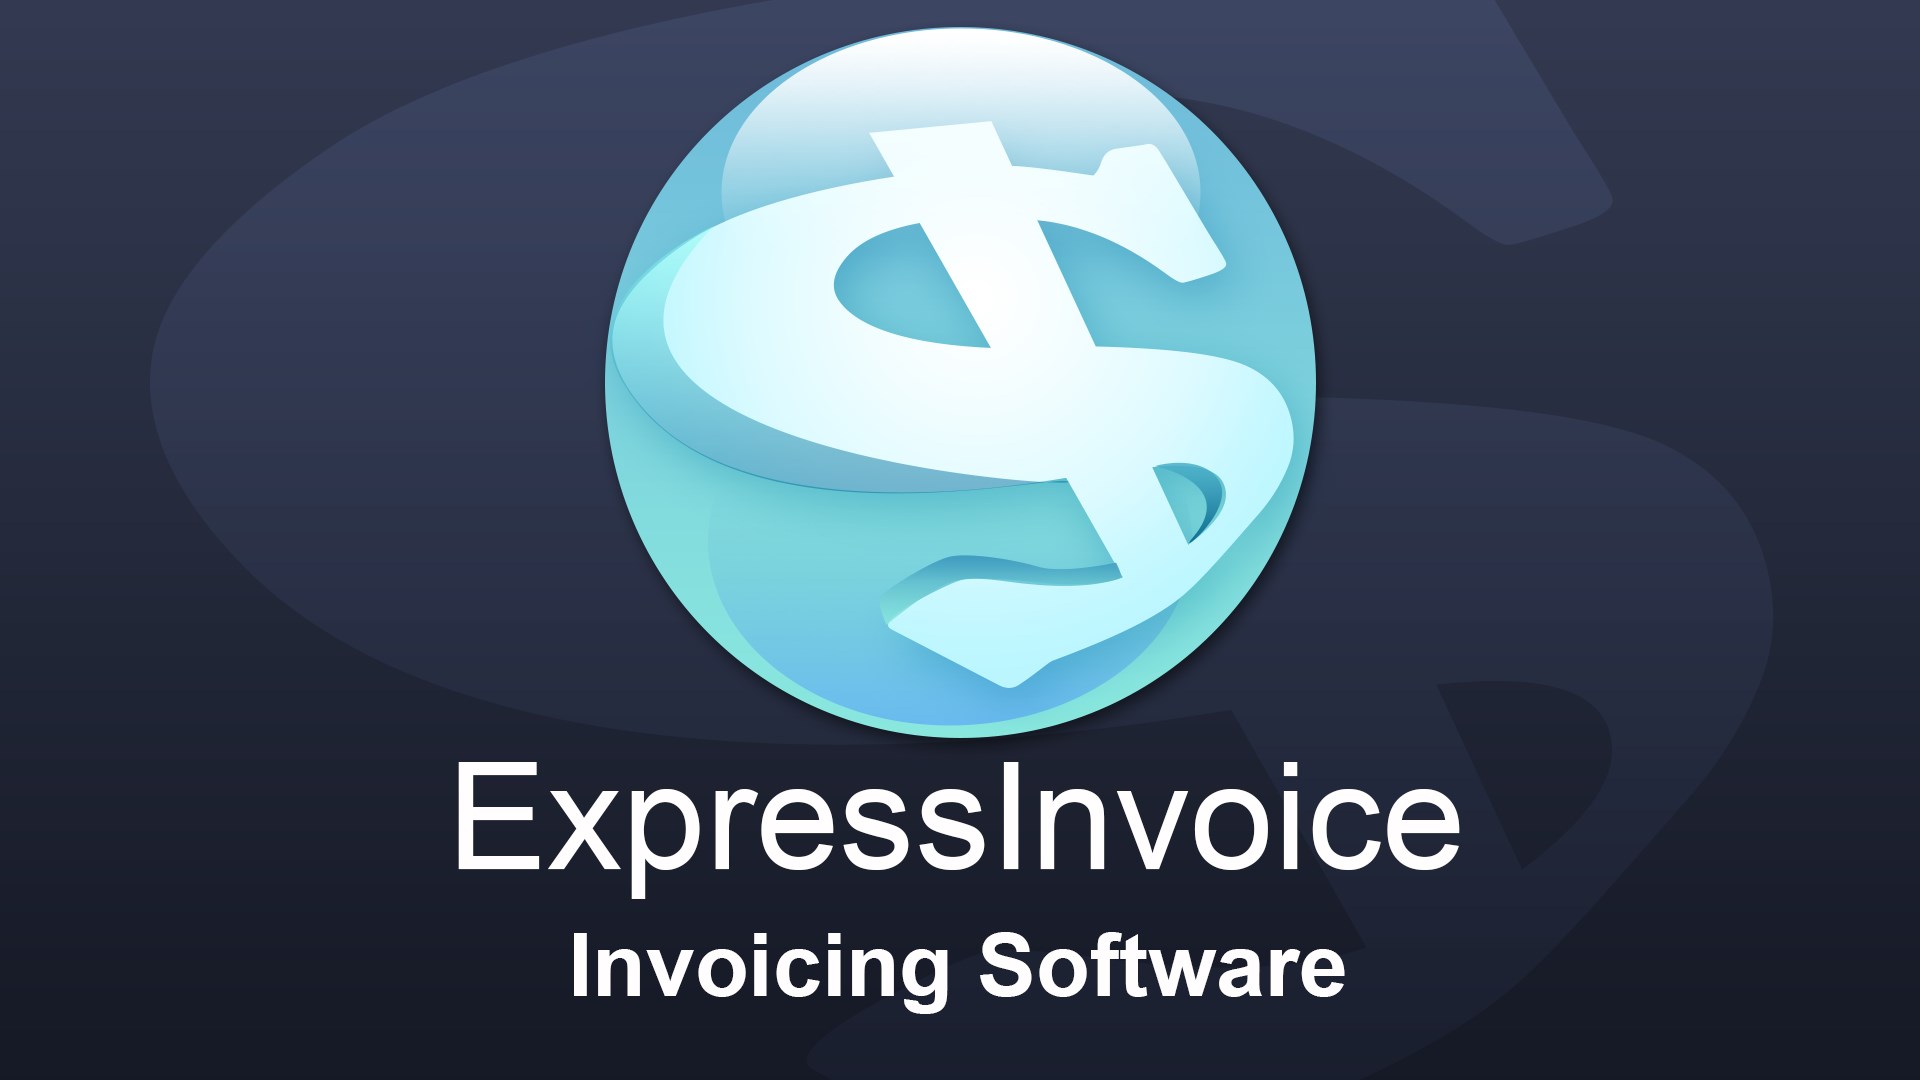 Nch express invoice key